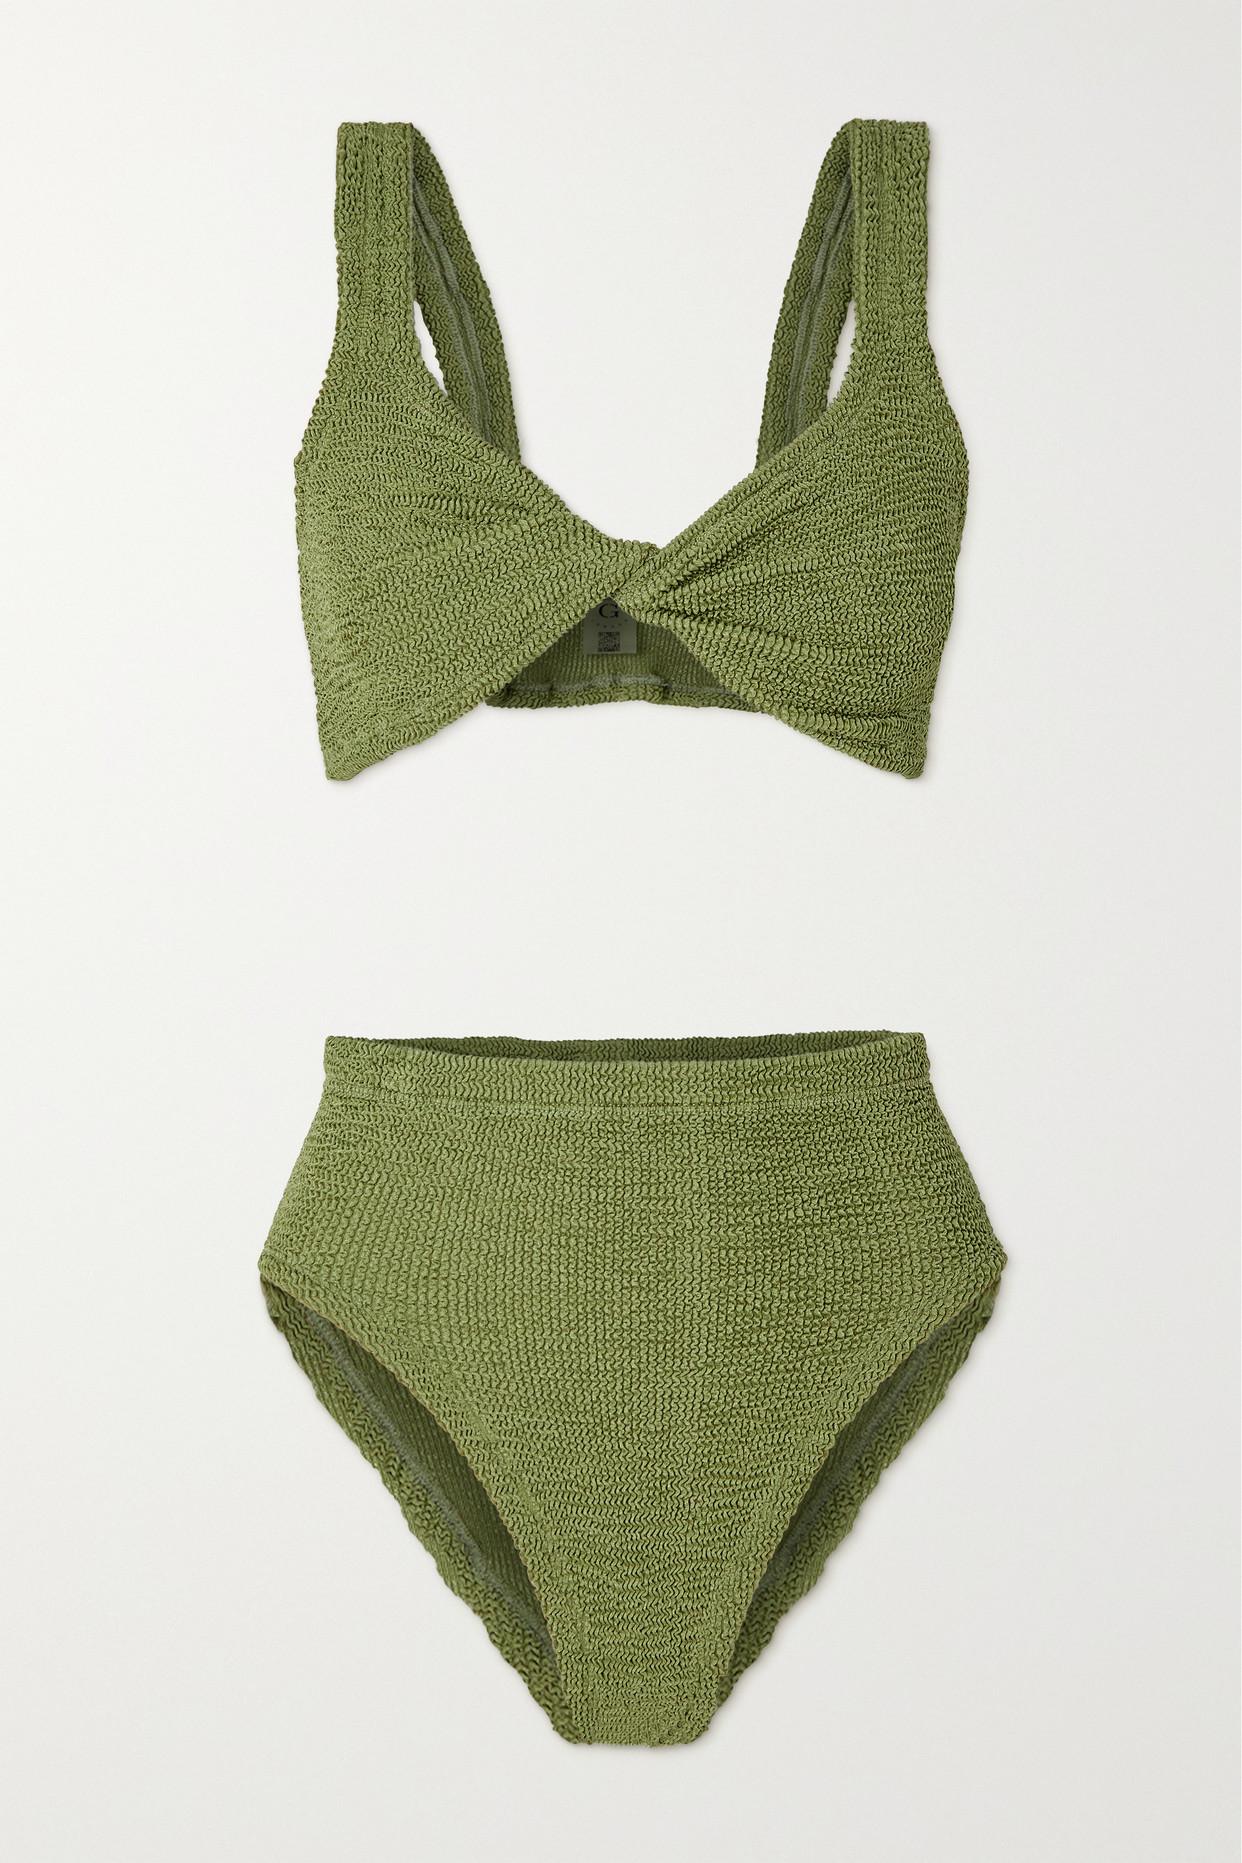 Hunza G + Net Sustain Jamie Twist-front Seersucker Bikini in Green | Lyst